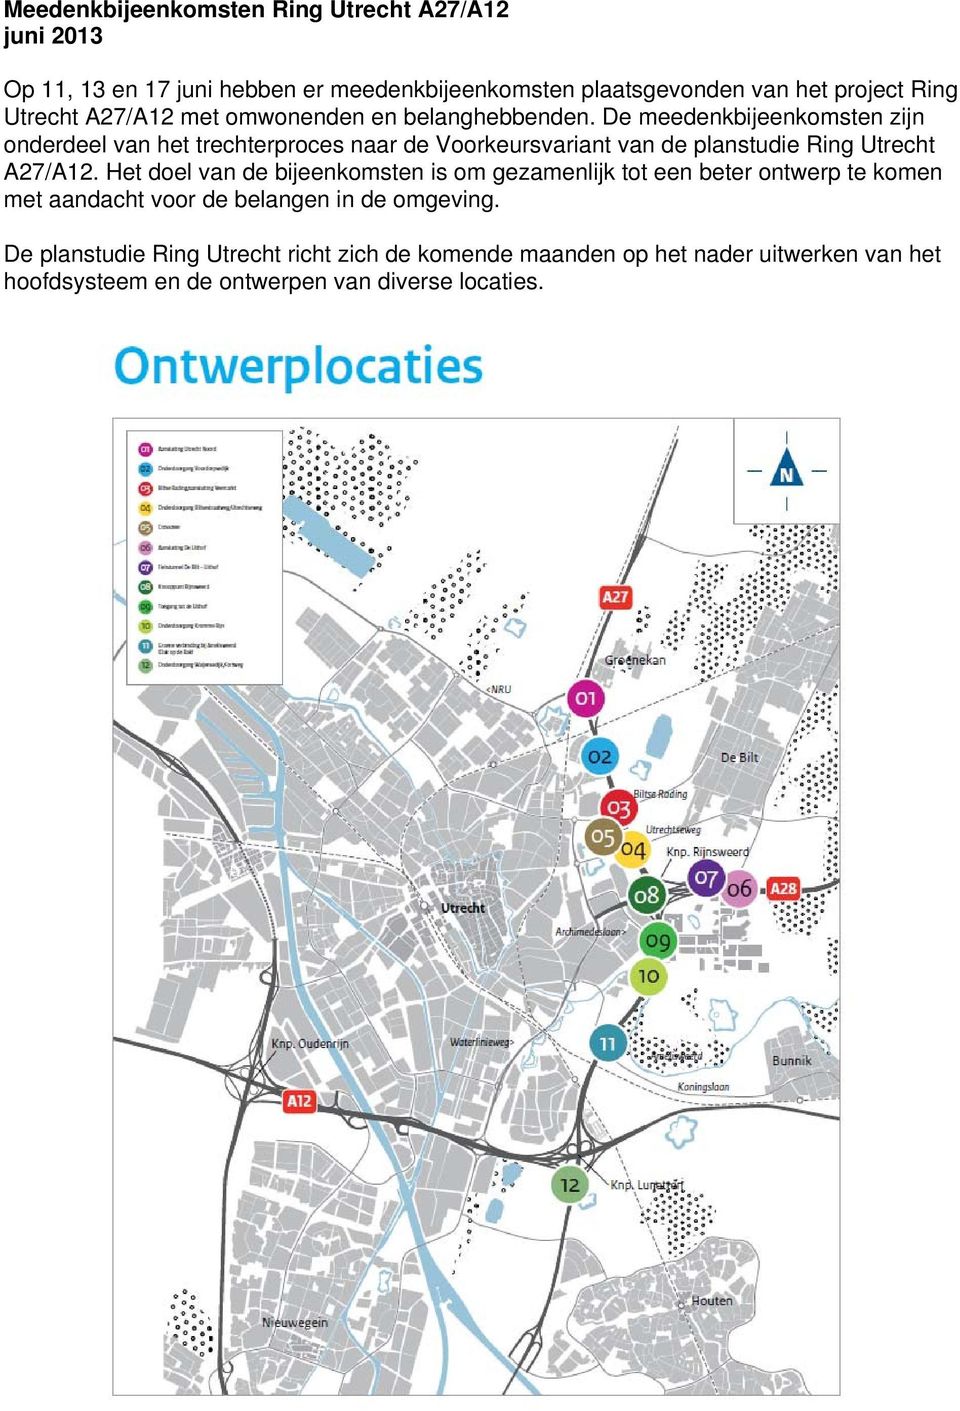 De meedenkbijeenkomsten zijn onderdeel van het trechterproces naar de Voorkeursvariant van de planstudie Ring Utrecht A27/A12.